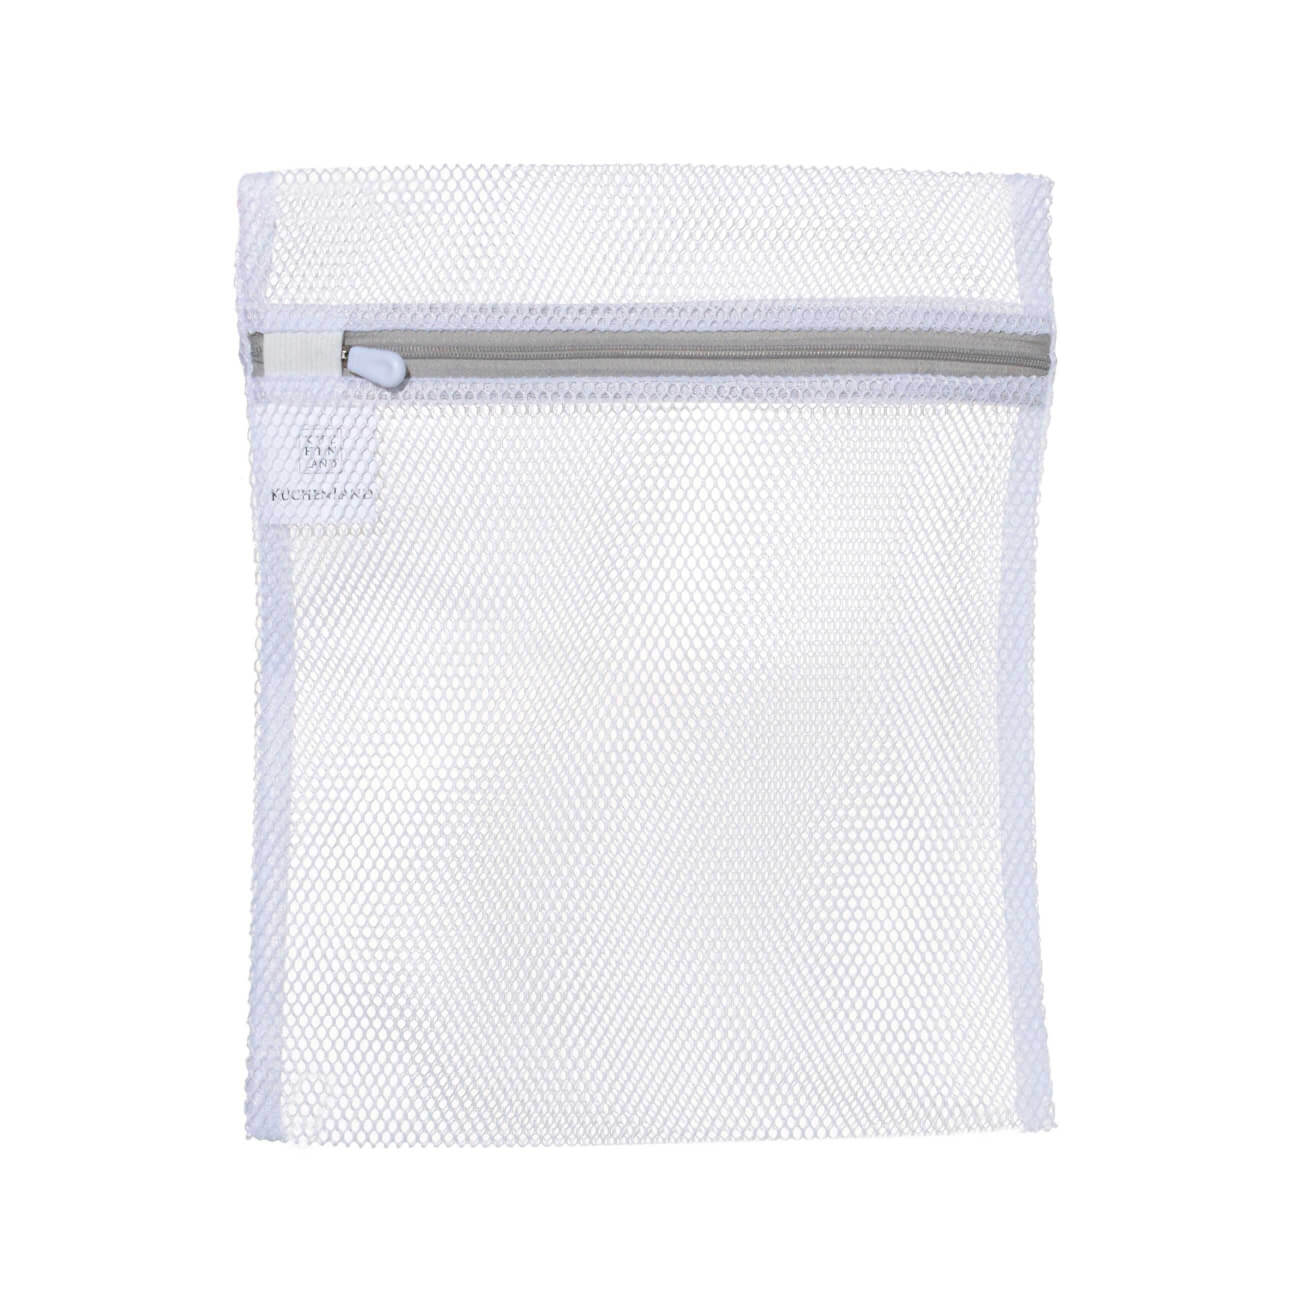 Мешок для стирки нижнего белья, 25х30 см, полиэстер, бело-серый, Safety мешок для стирки эконова белый 600х400 мм